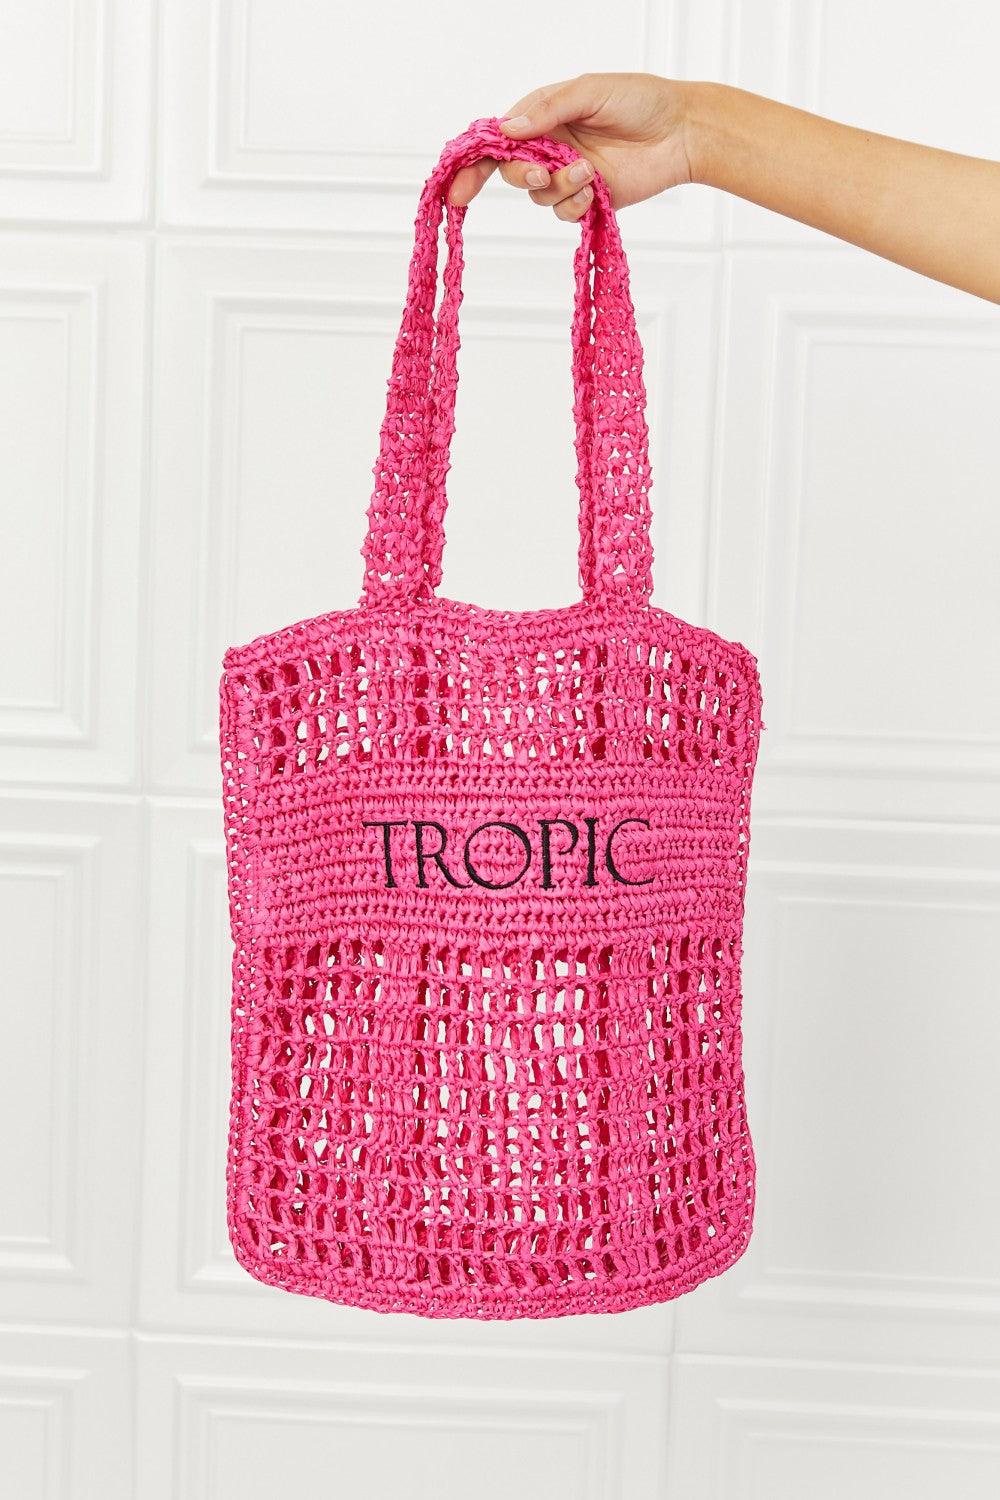 Fame Tropic Babe Staw Tote Bag - Lab Fashion, Home & Health